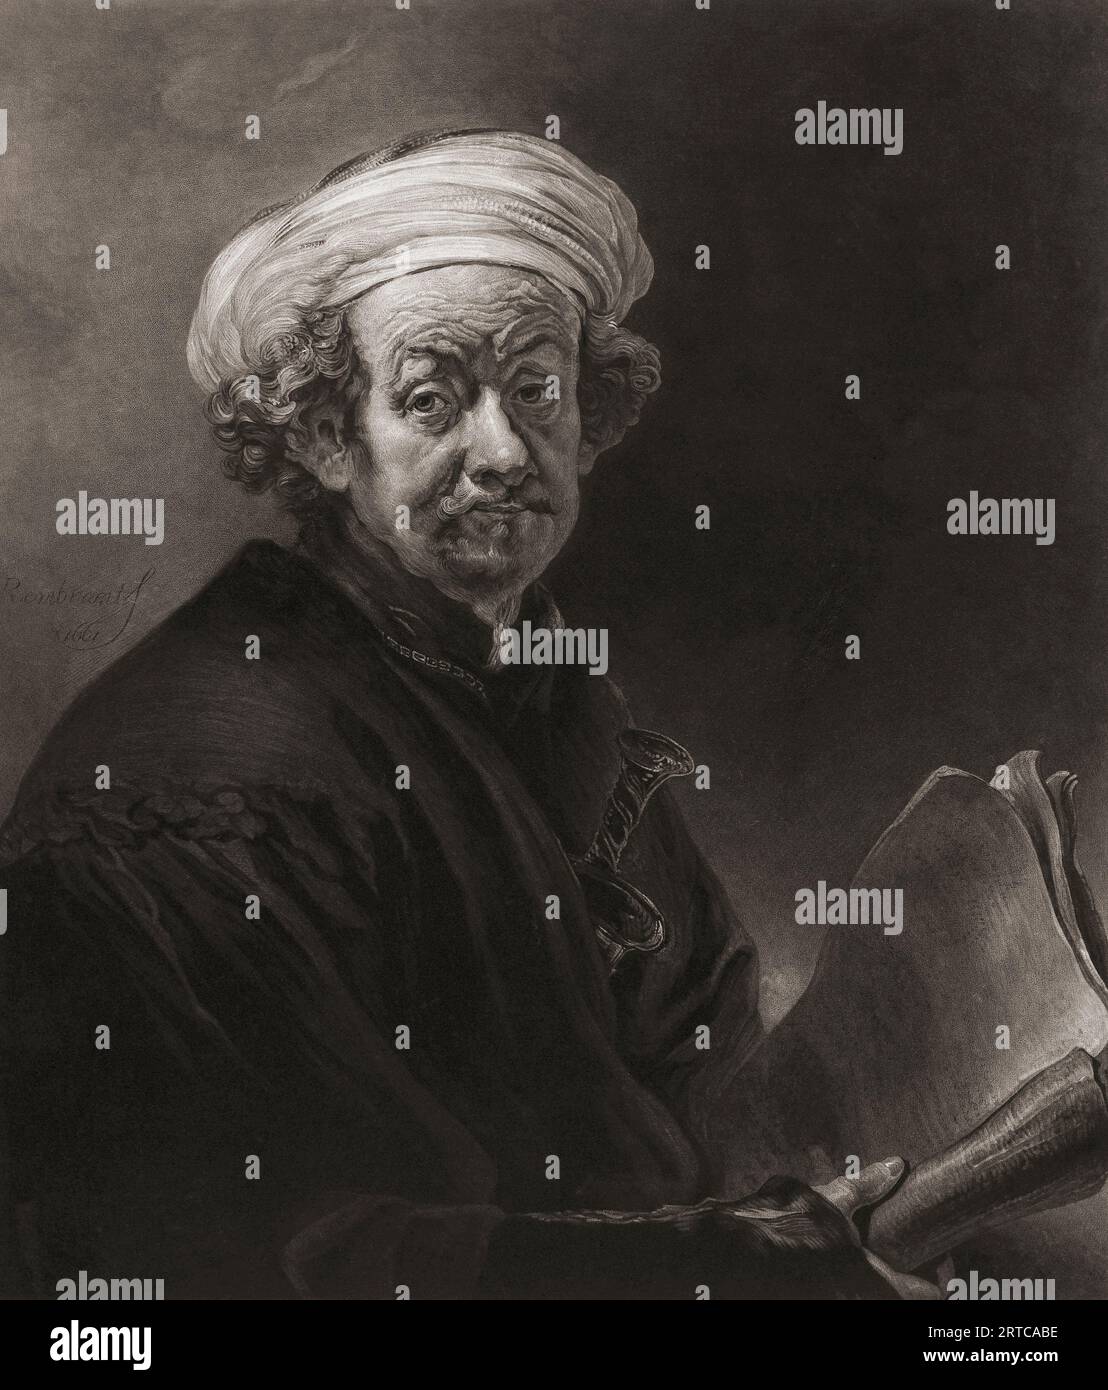 Rembrandt als Apostel Paulus. Rembrandt Harmenszoon van Rijn, 1606-1669. Niederländischer Künstler. Nach einem Druck von Charles Turner aus dem Selbstporträt von Rembrandt. Stockfoto